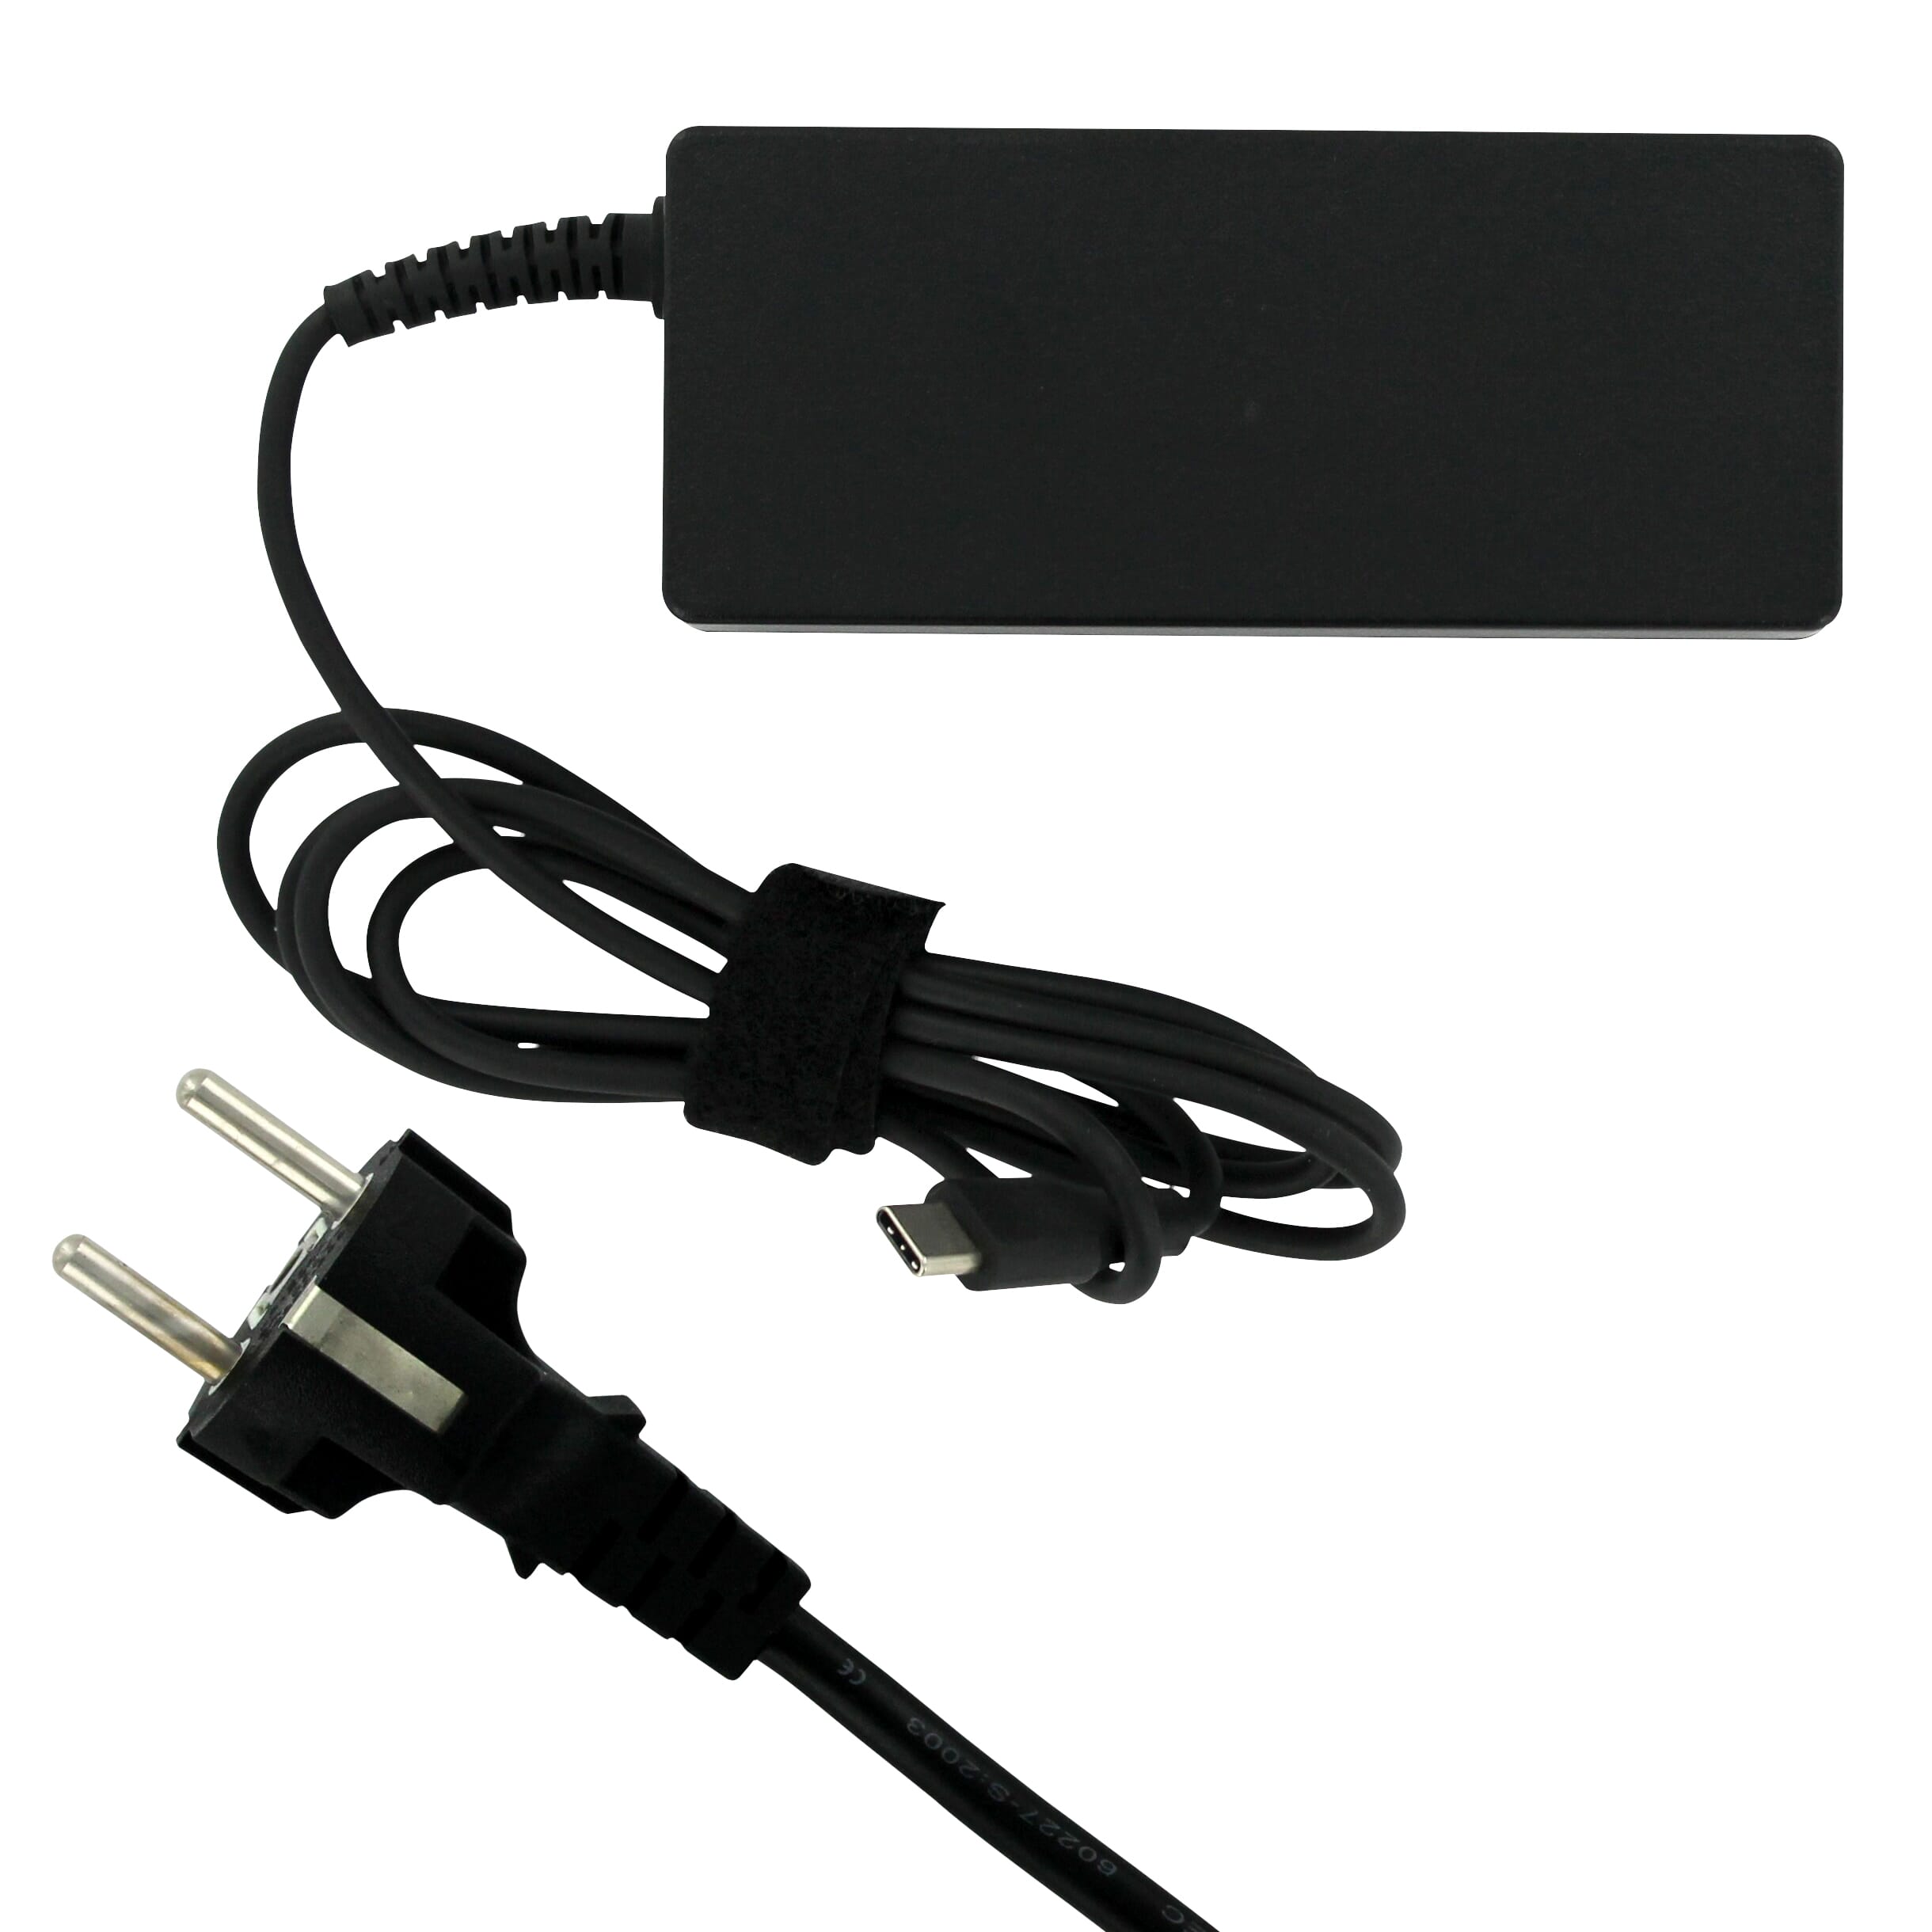 Chargeur ordinateur portable USB Type C - 65 W - Discomputer